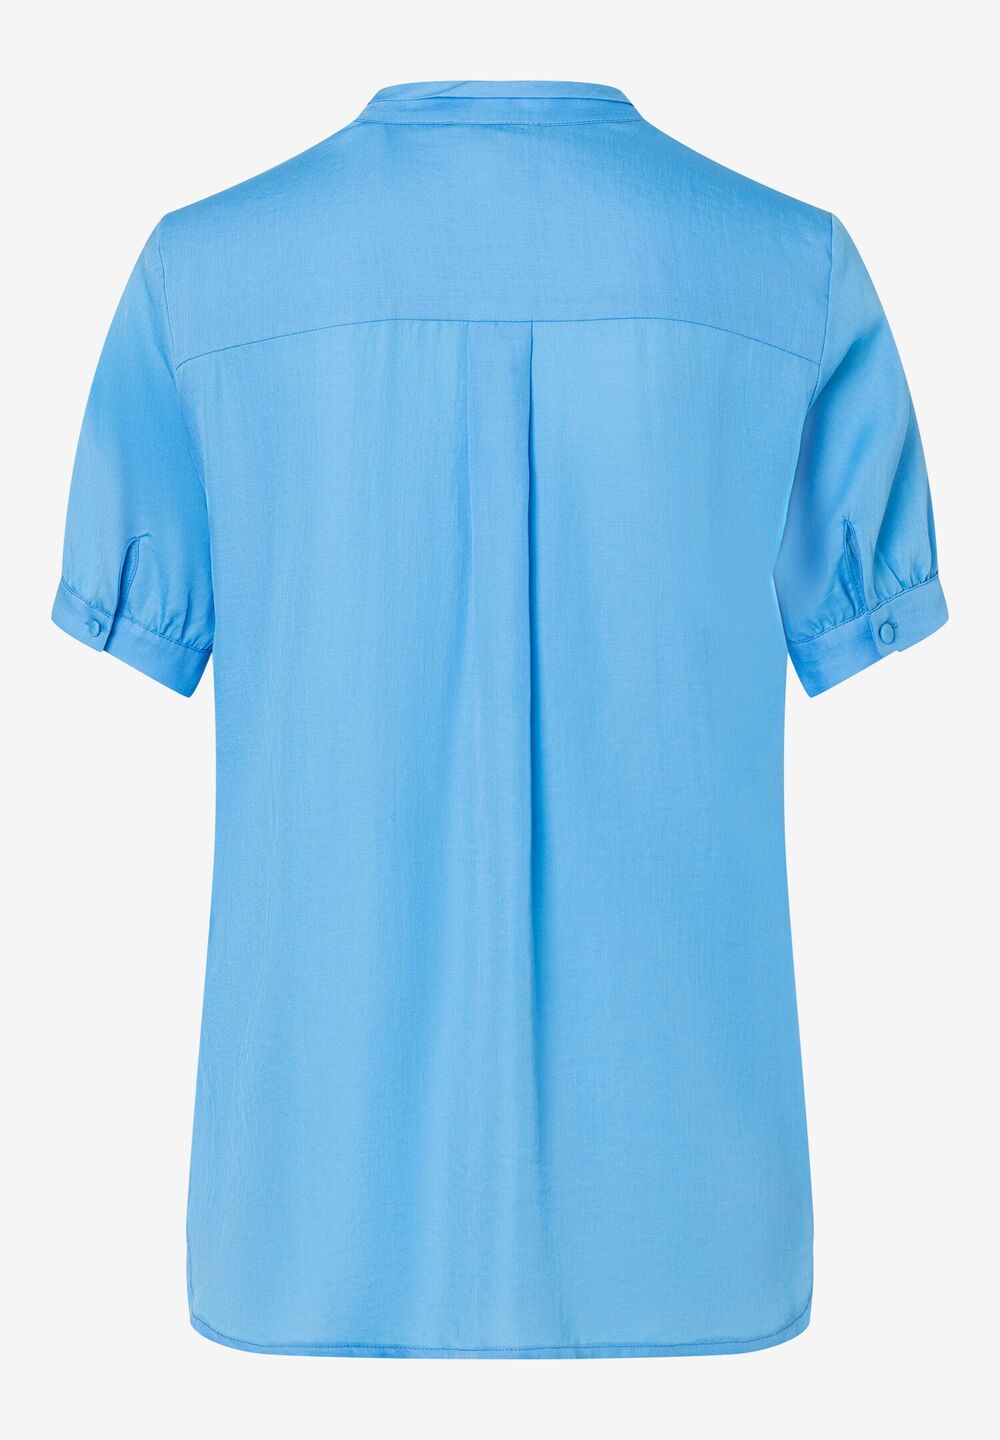 leichte Bluse, happy blue, Sommer-Kollektion, blauRückansicht